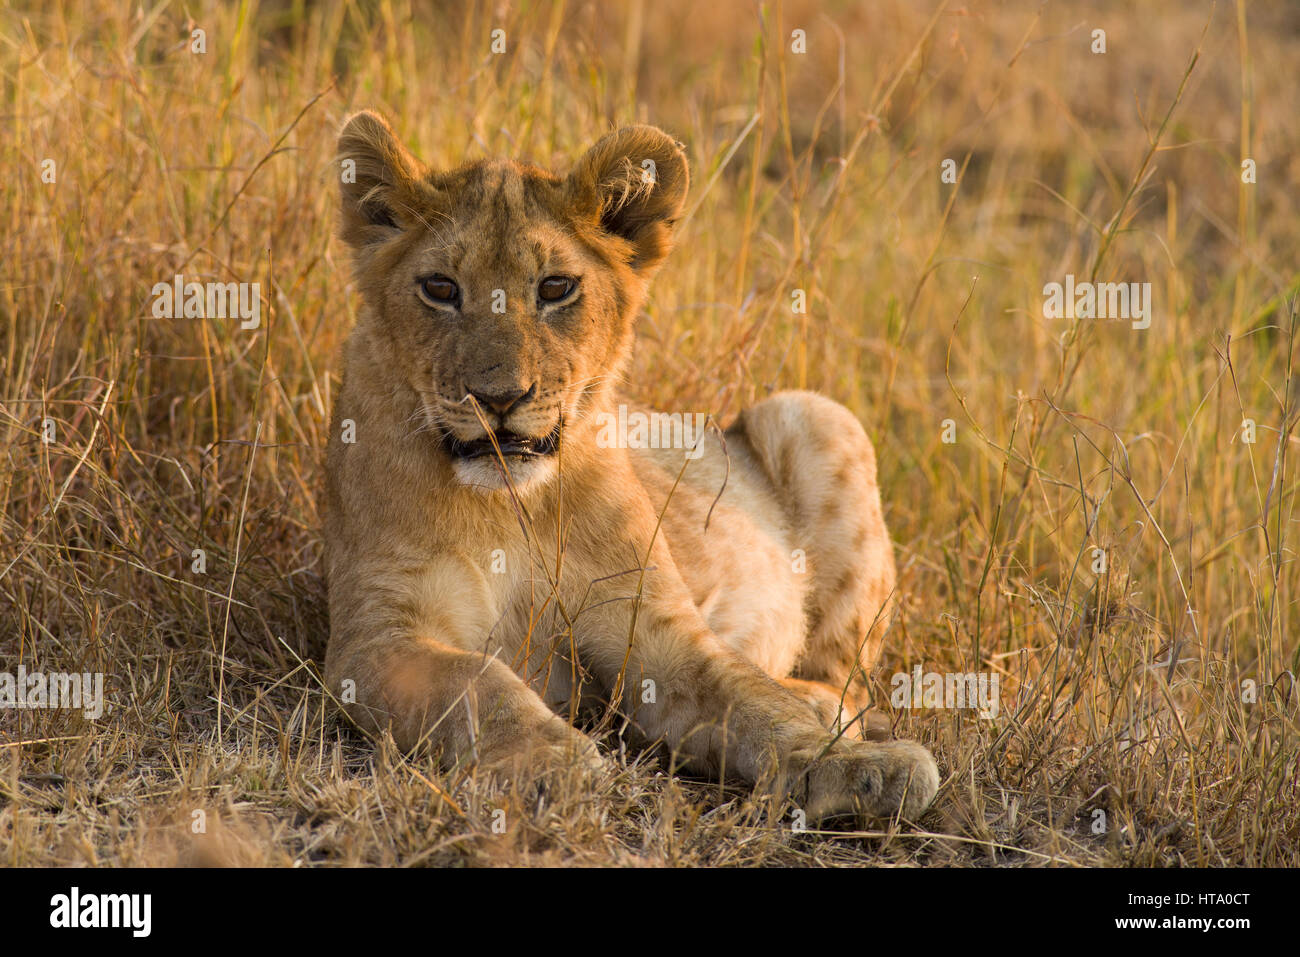 Cachorro de león (Panthera leo) descansando en el césped seco, Maasai Mara, Kenia Foto de stock